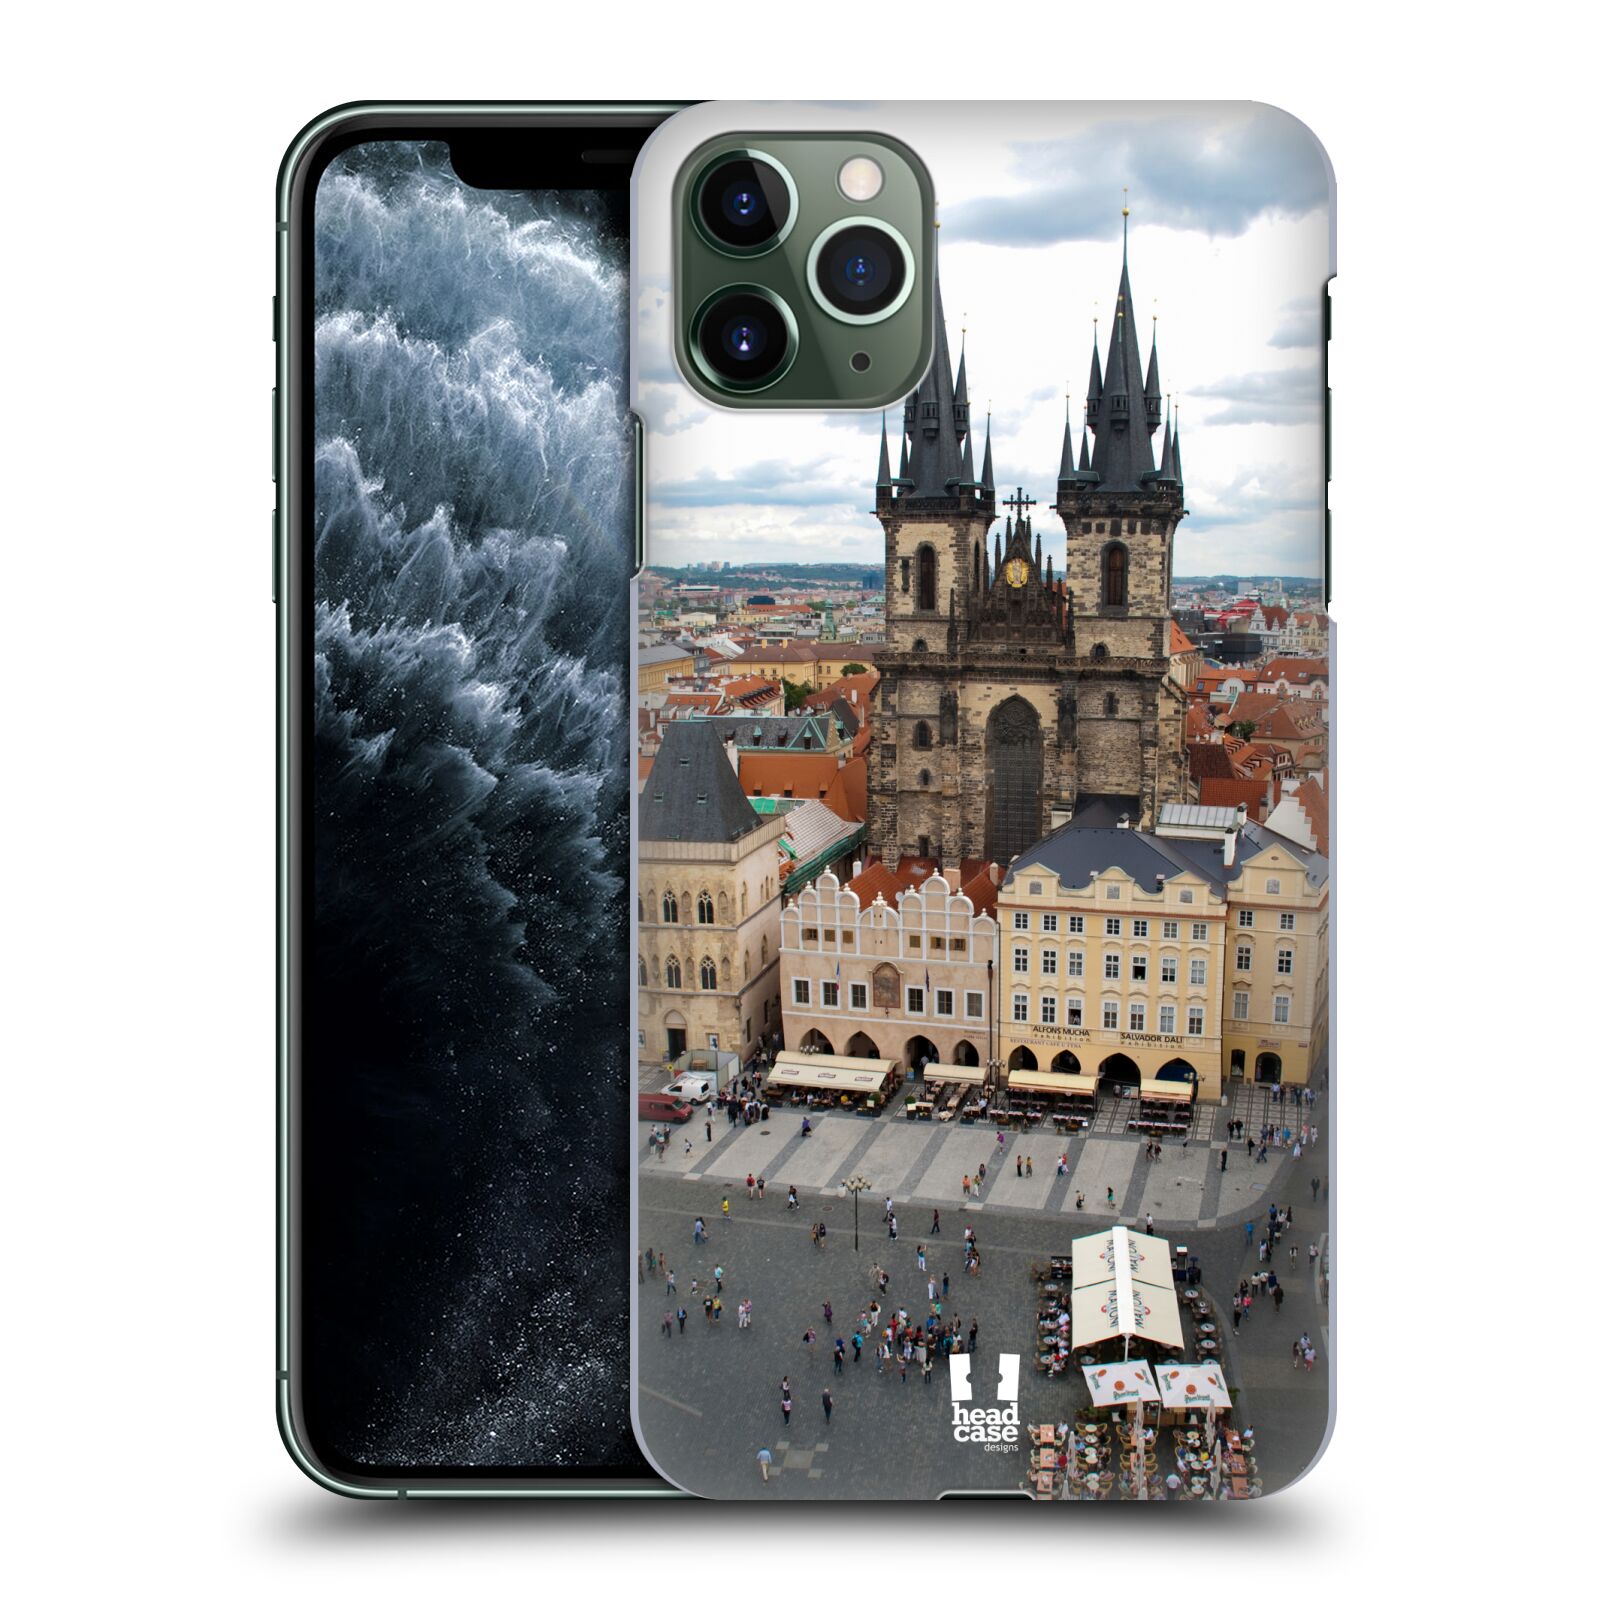 Pouzdro na mobil Apple Iphone 11 PRO MAX - HEAD CASE - vzor Města foto náměstí ČESKÁ REPUBLIKA, PRAHA, STAROMĚSTSKÉ NÁMĚSTÍ